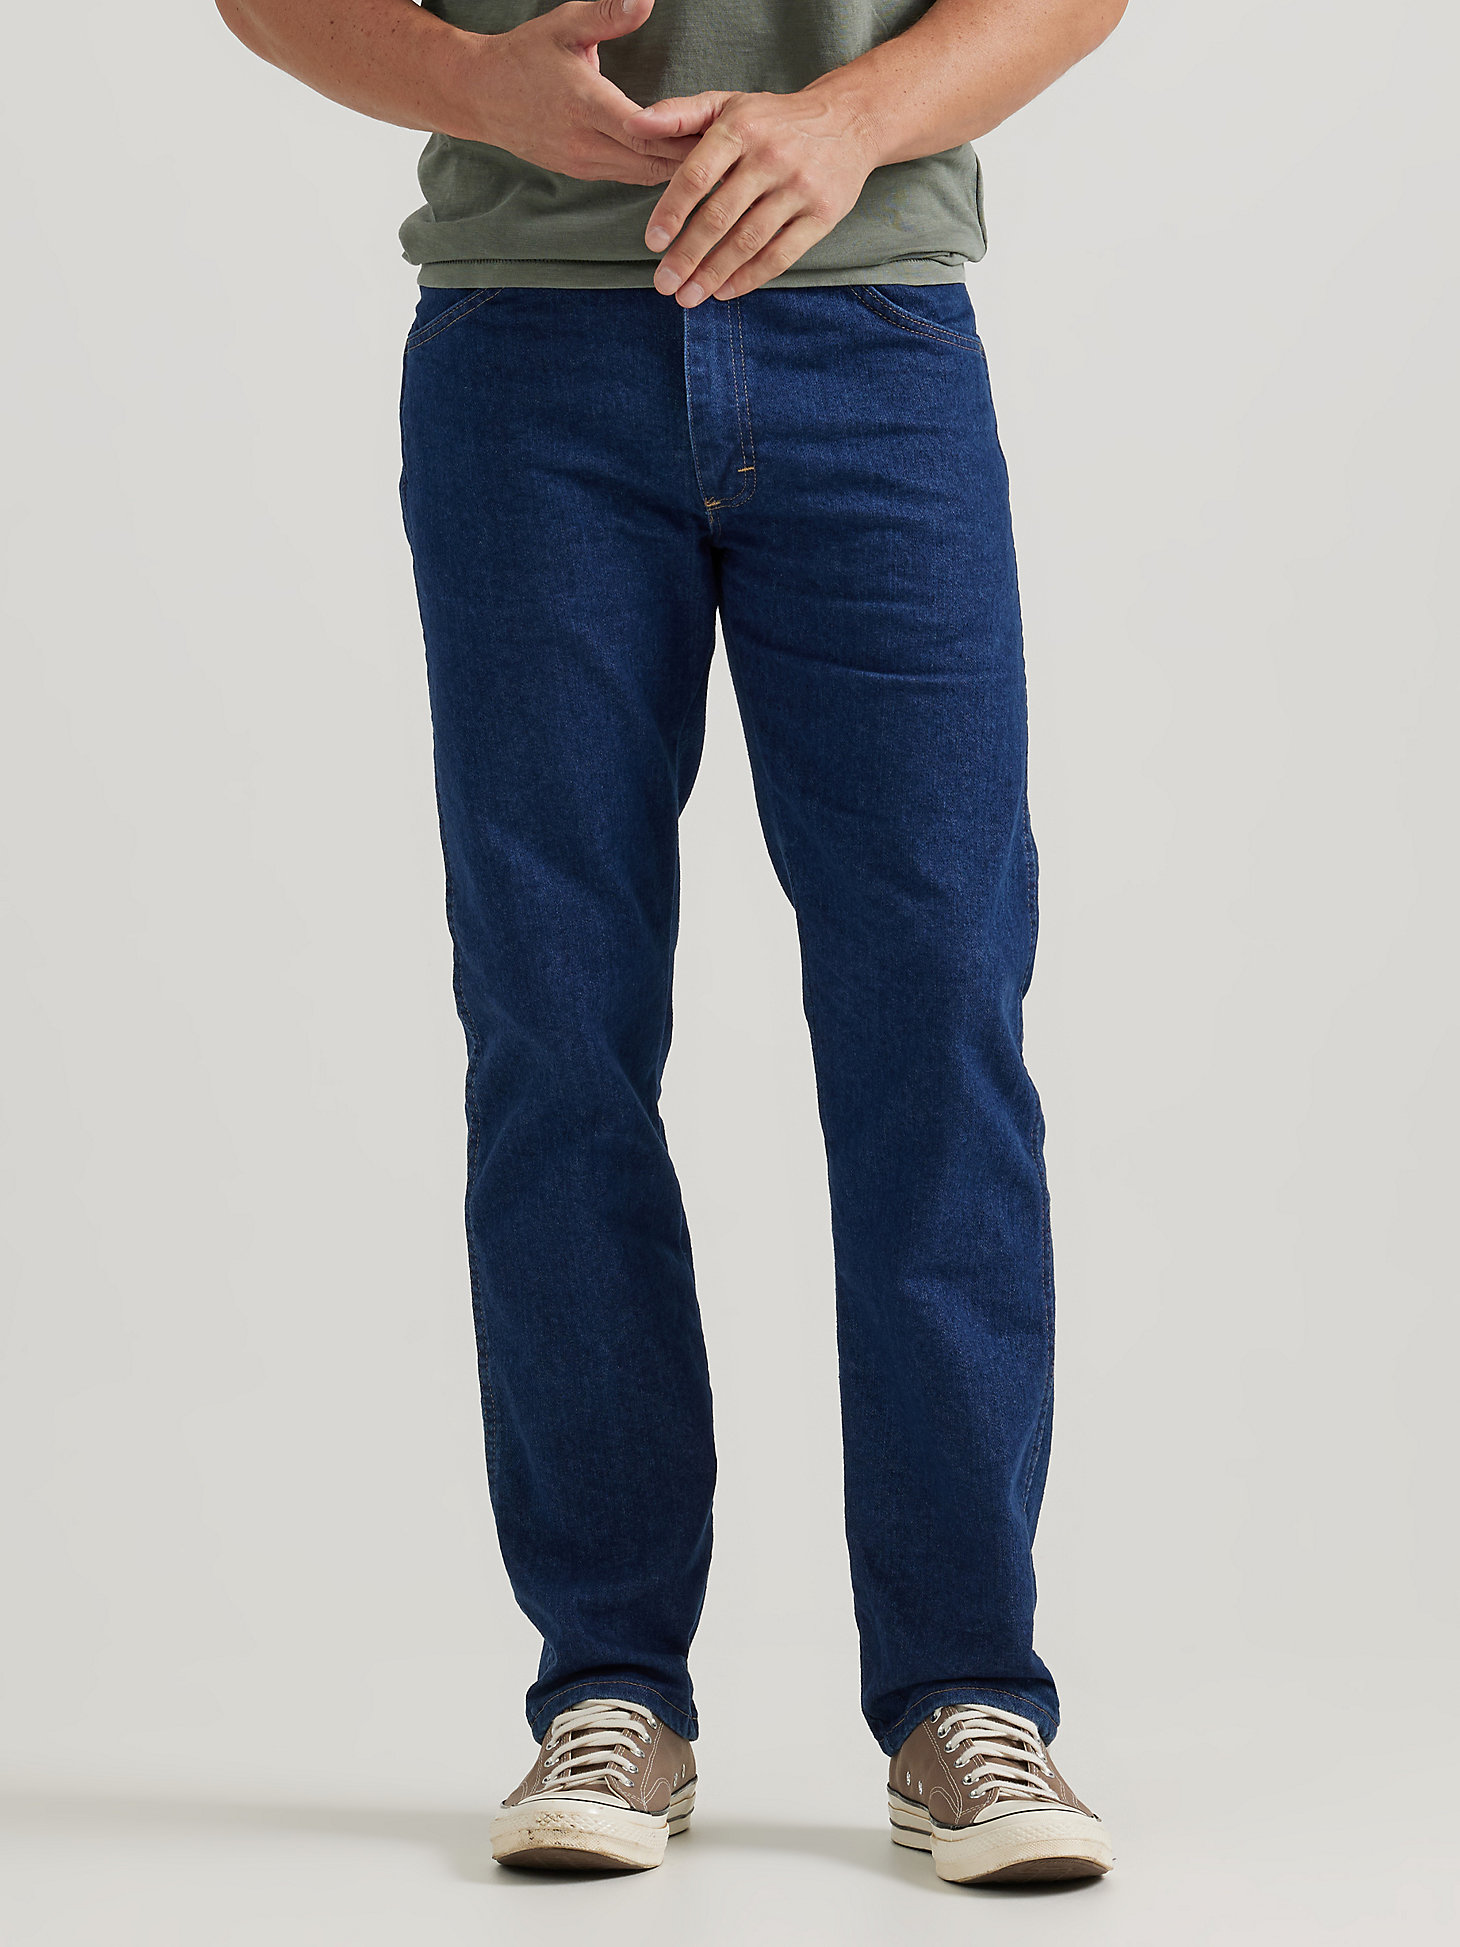 Descubrir 57+ imagen mens wrangler blue jeans